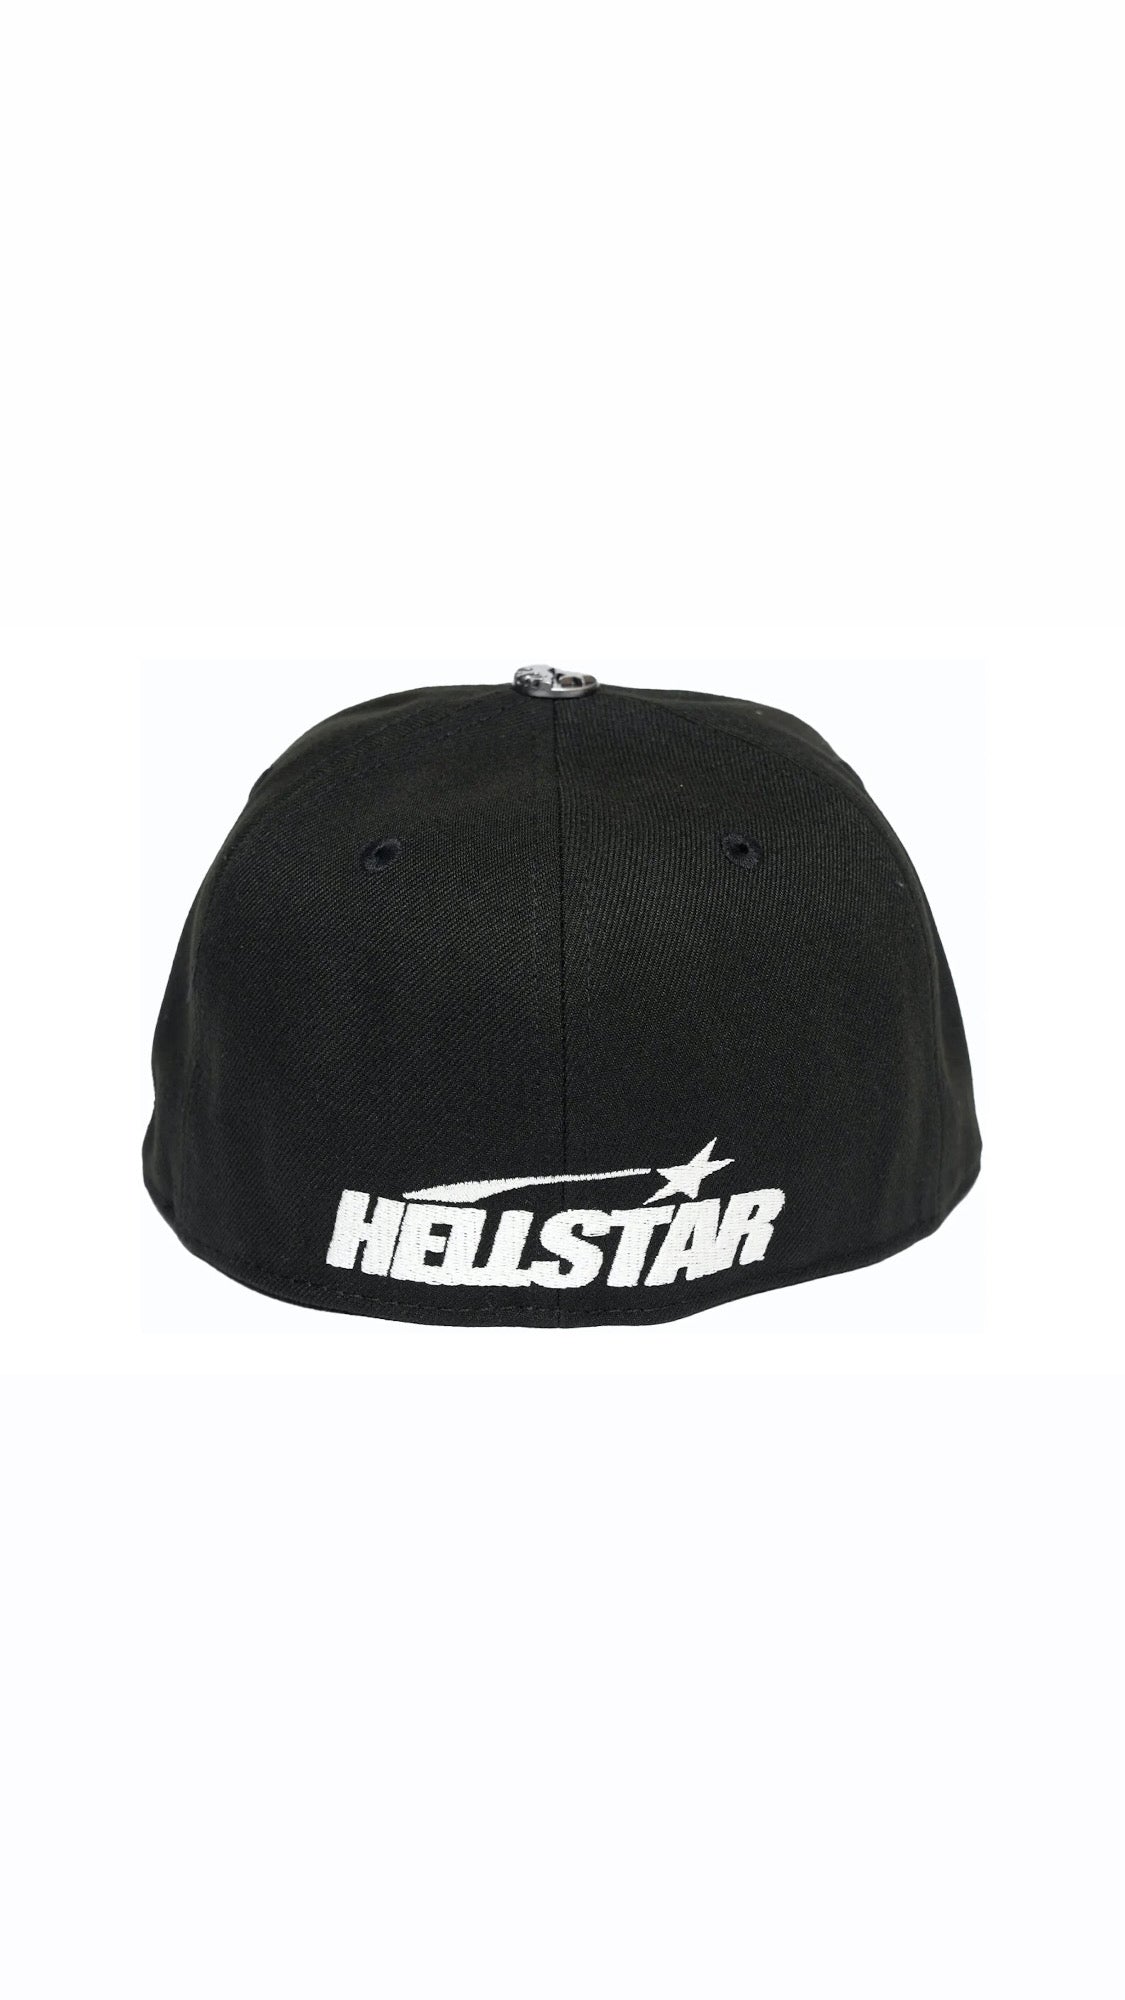 HELLSTAR OG Fitted Hat